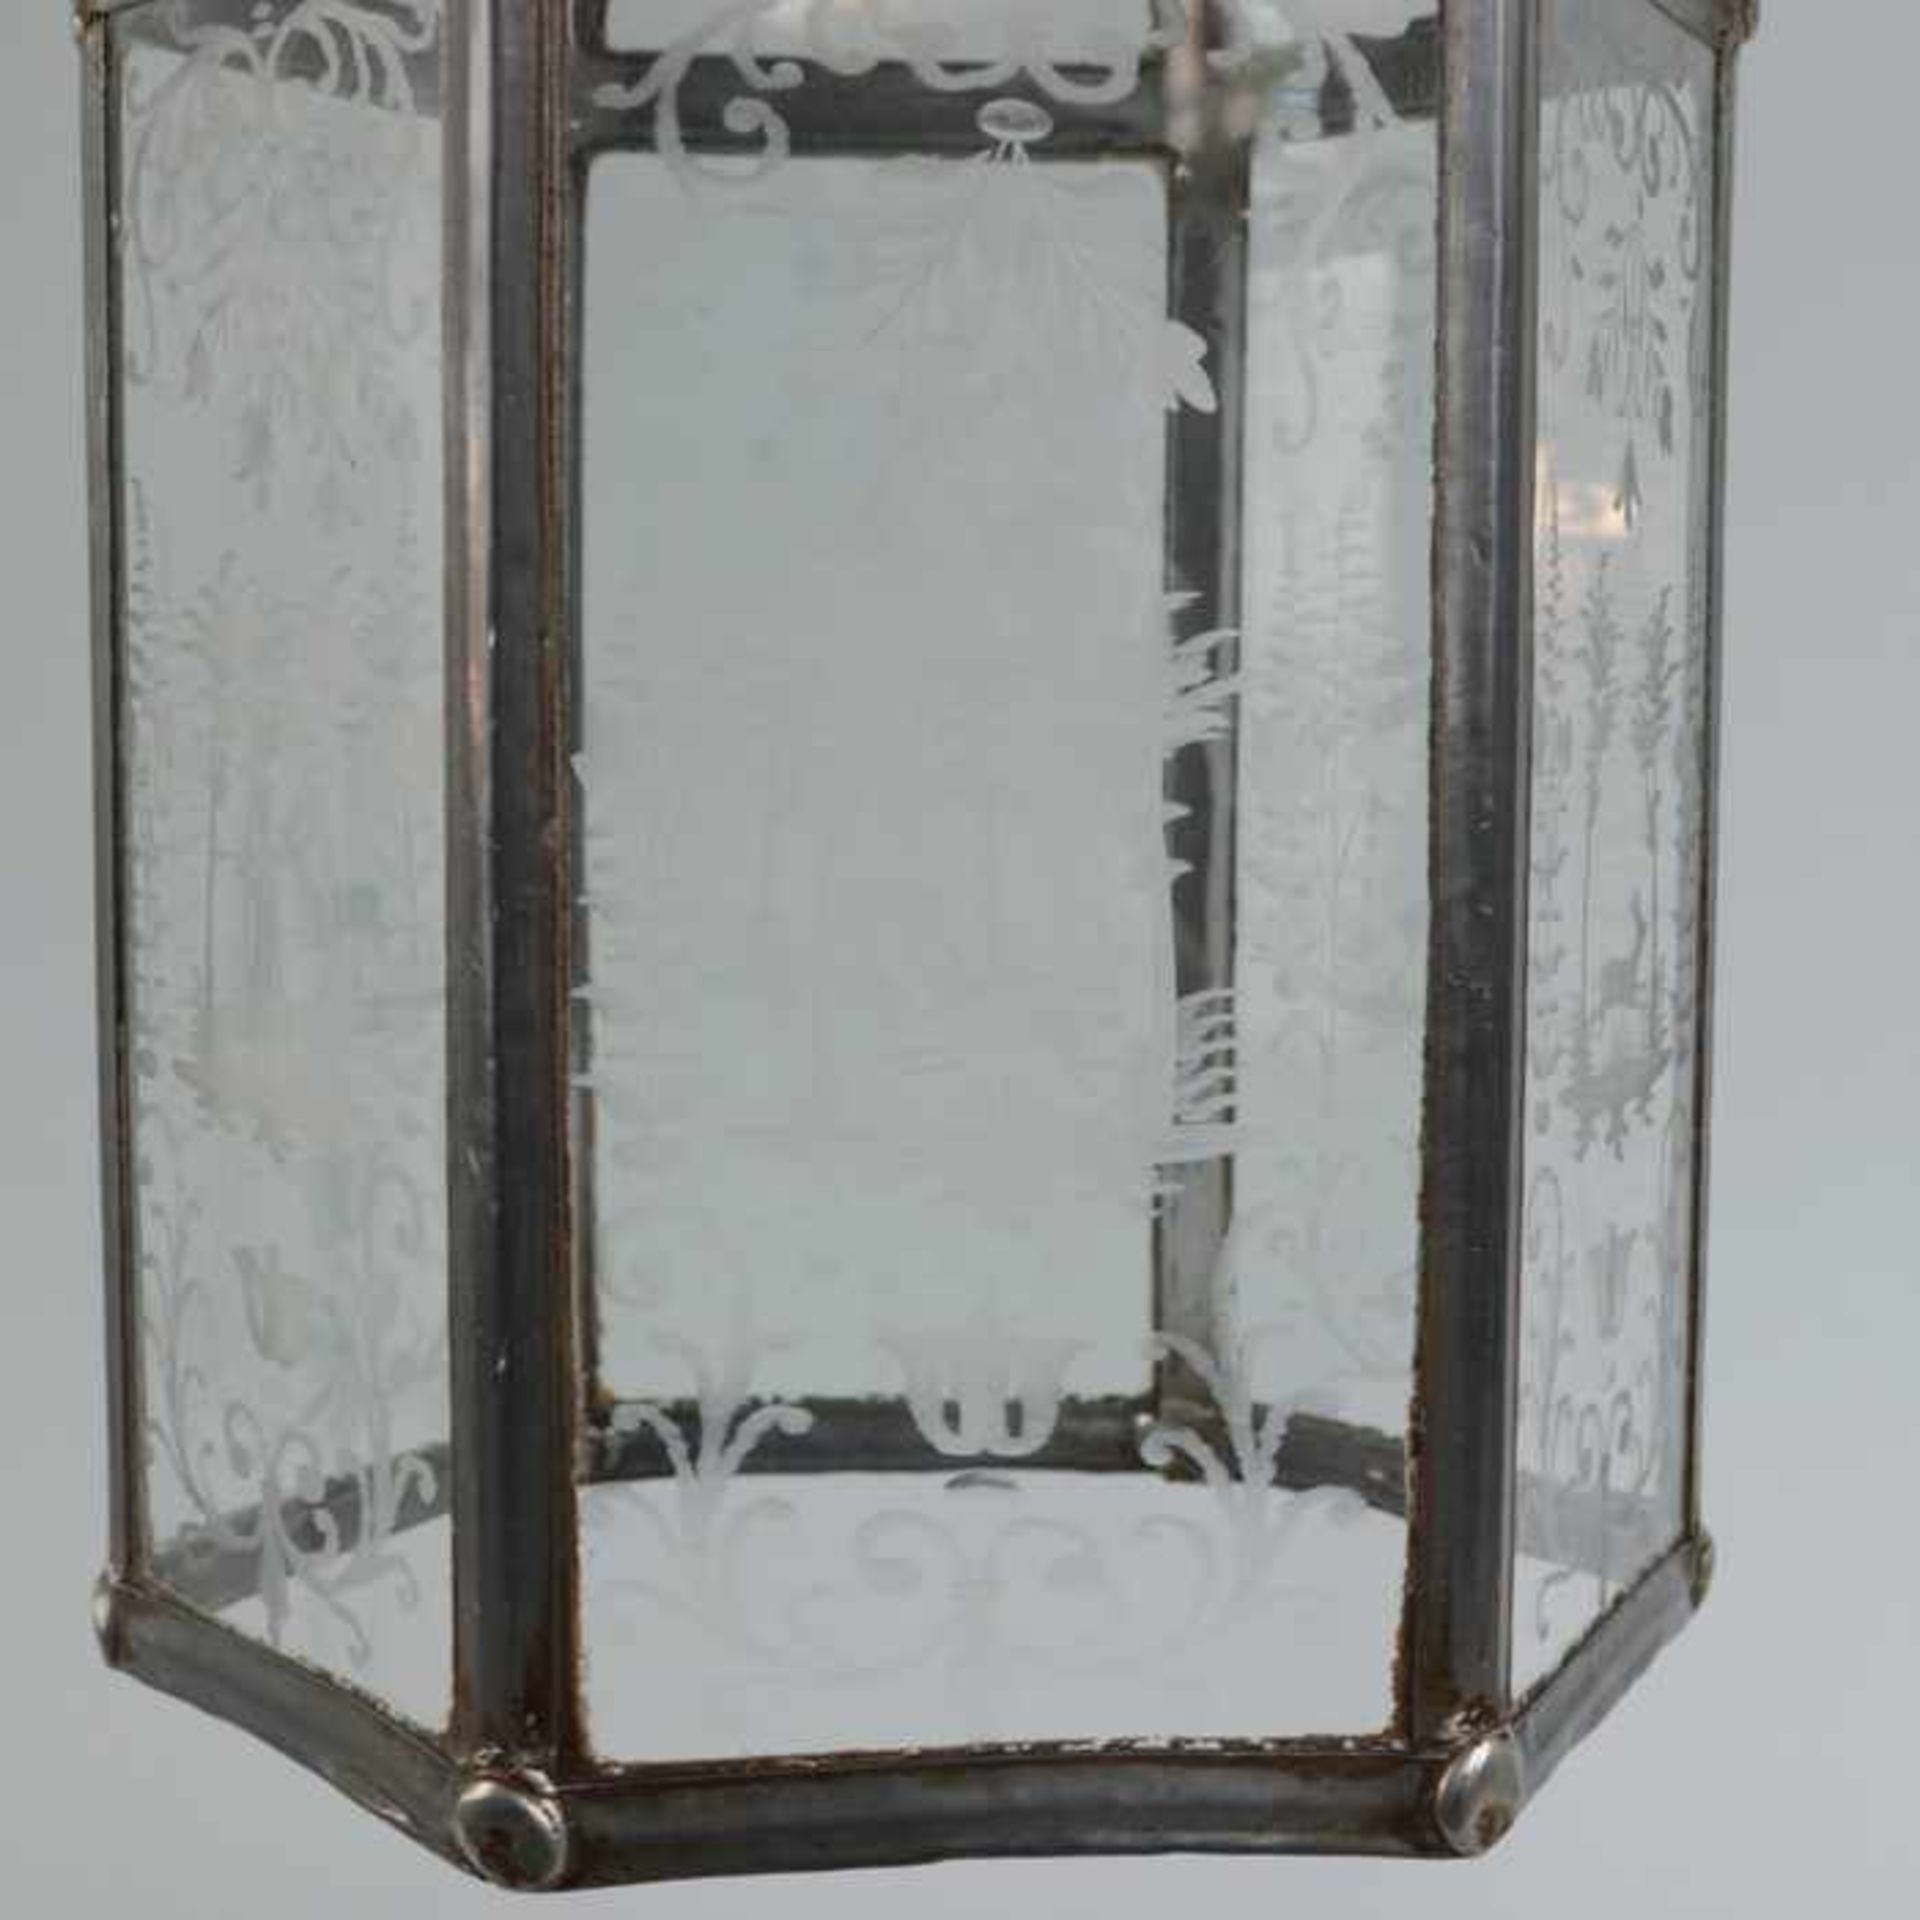 DeckenlaterneMetall/Glas, einflammig, bleiverglaster Korpus, hexagonale Form, geschnittene Jagd- - Bild 2 aus 4